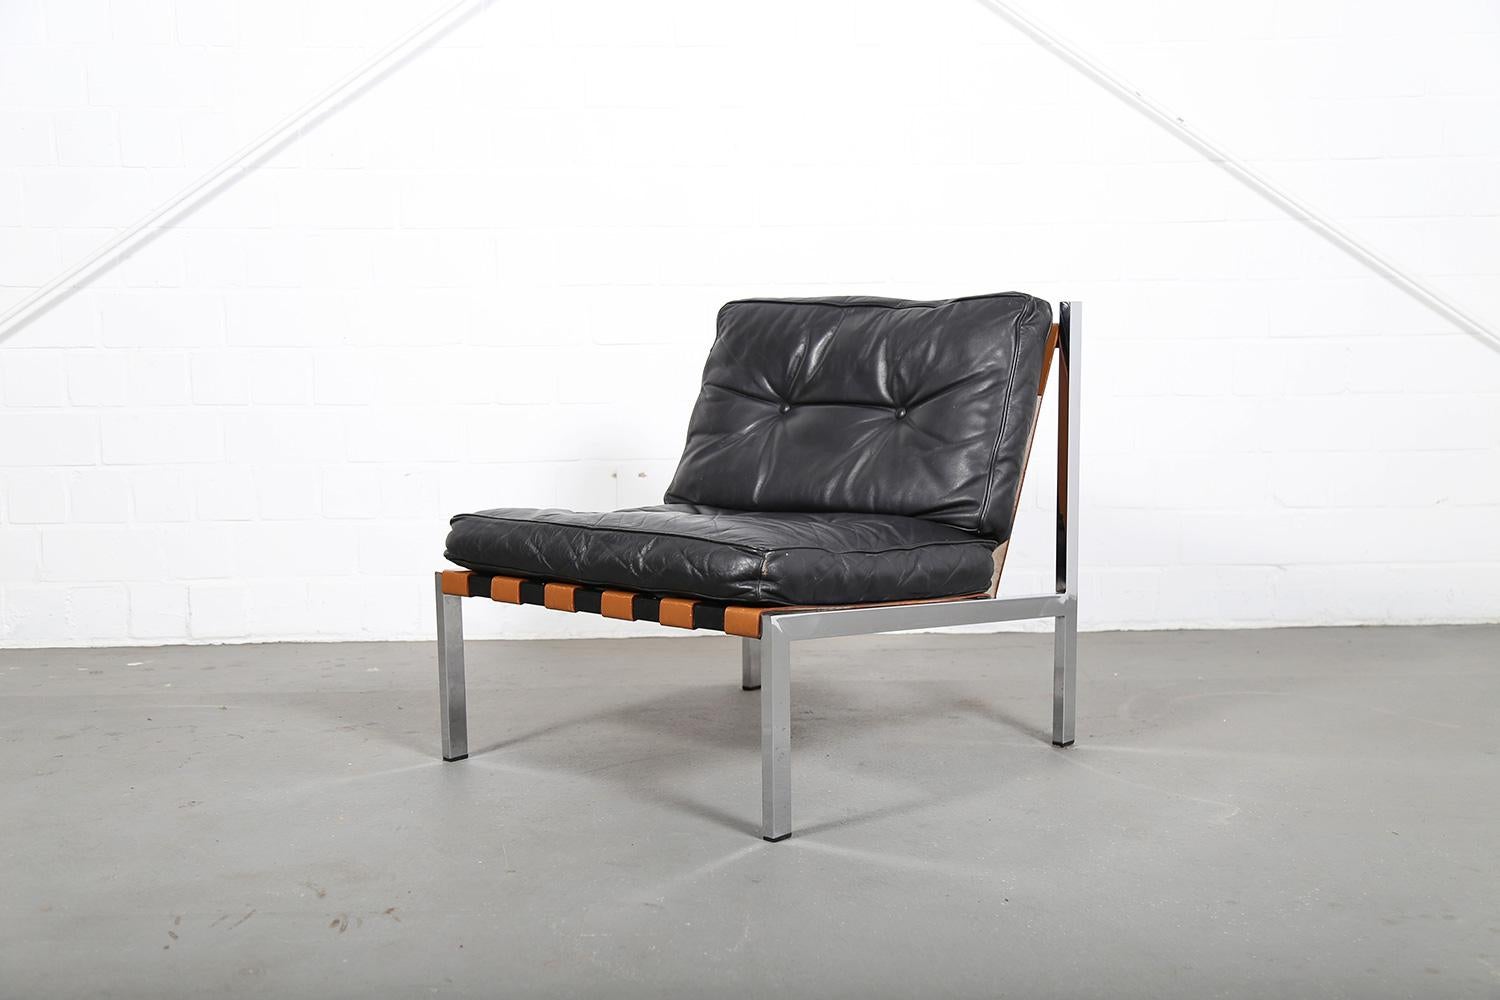 Barcelona-Sessel, entworfen von Prof. Ernst Josef Althoff in den 1960er Jahren. Ernst Josef Althoff war mit Mies van der Rohe befreundet und sein Entwurf dieses Sessels zeigt, dass beide auch geschmacklich gut zueinander passen. Die schwarzen